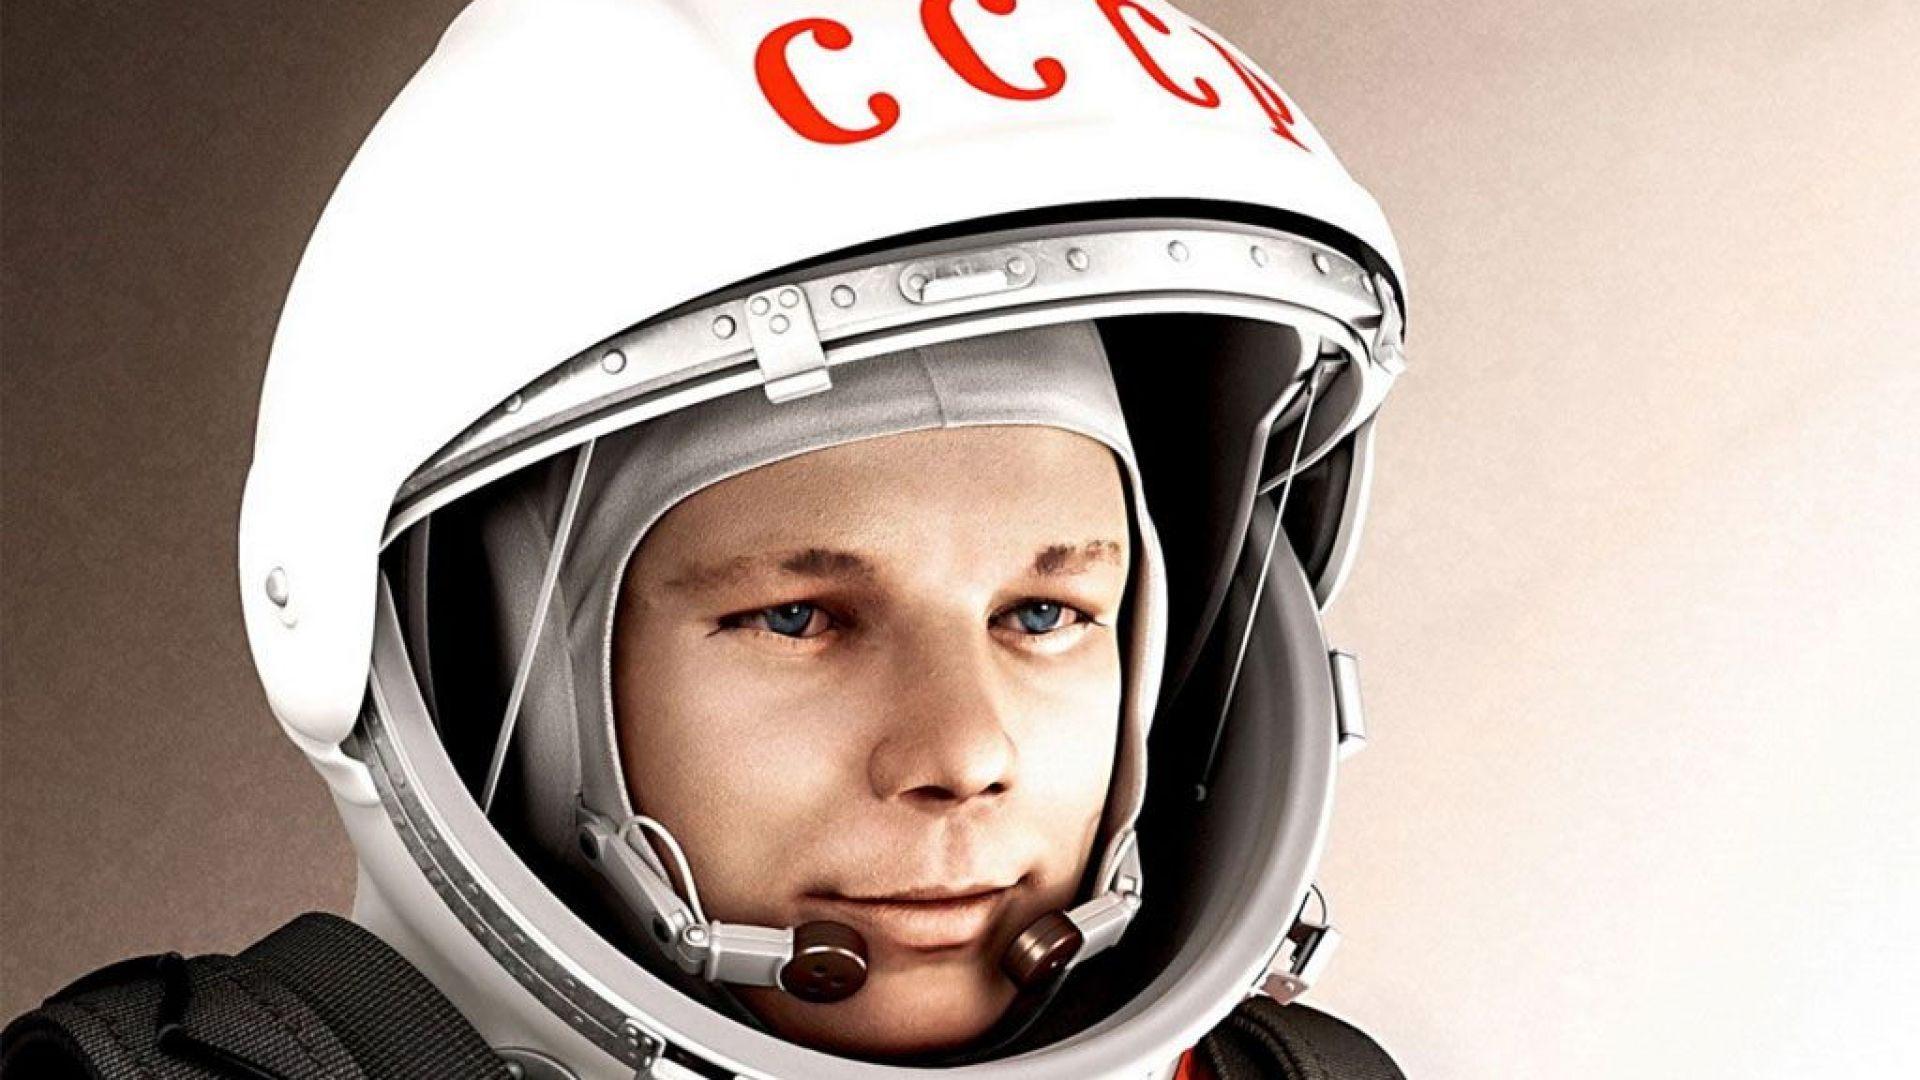 Первый космонавт видео